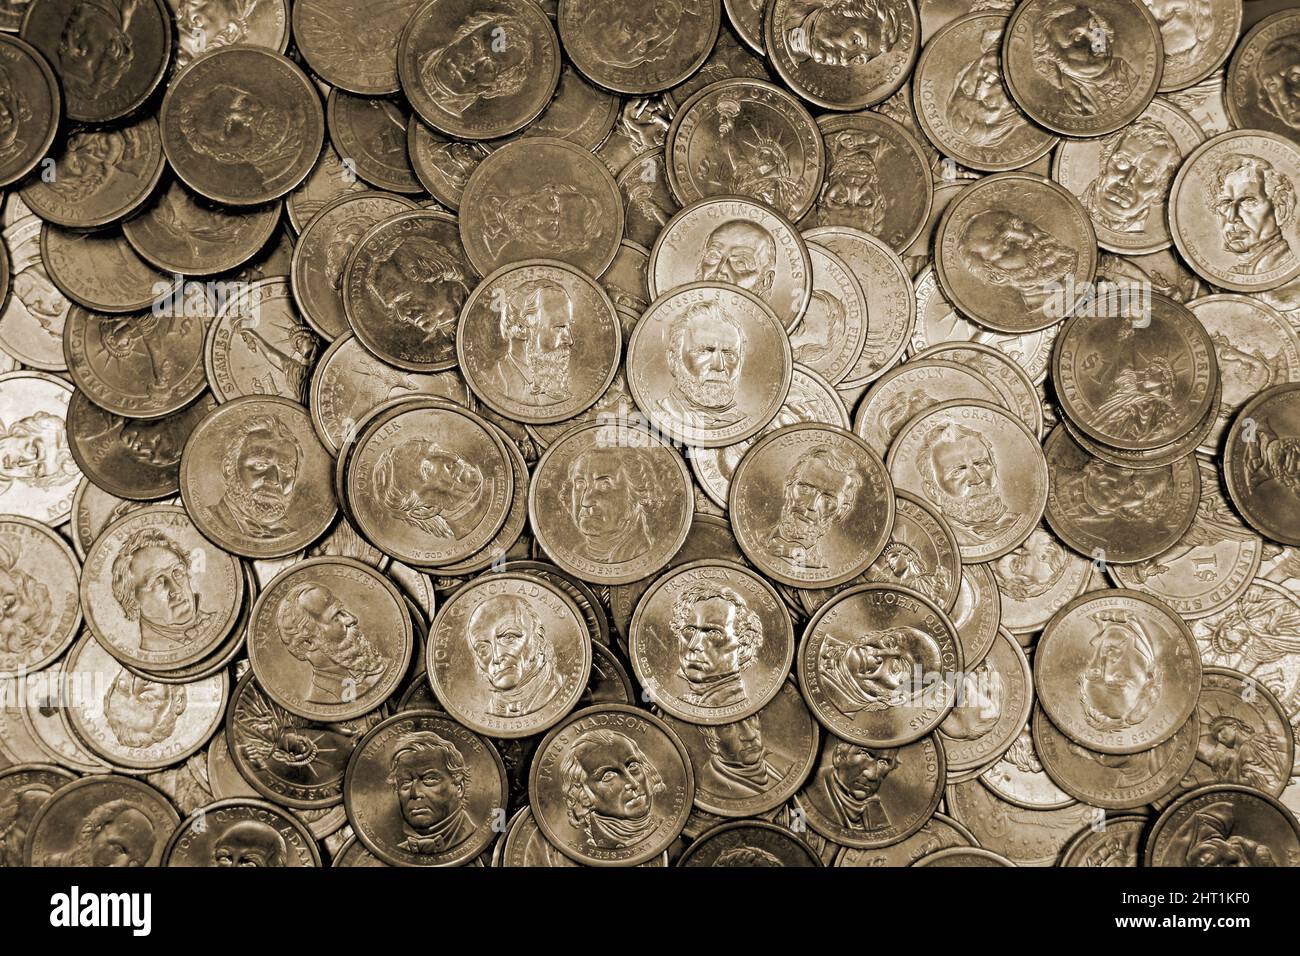 US-Dollar-Münzen Präsident Serie $1 goldfarben. Die United States Mint ehrt die Präsidenten unserer Nation. Flachlagerung über Kopf Stockfoto